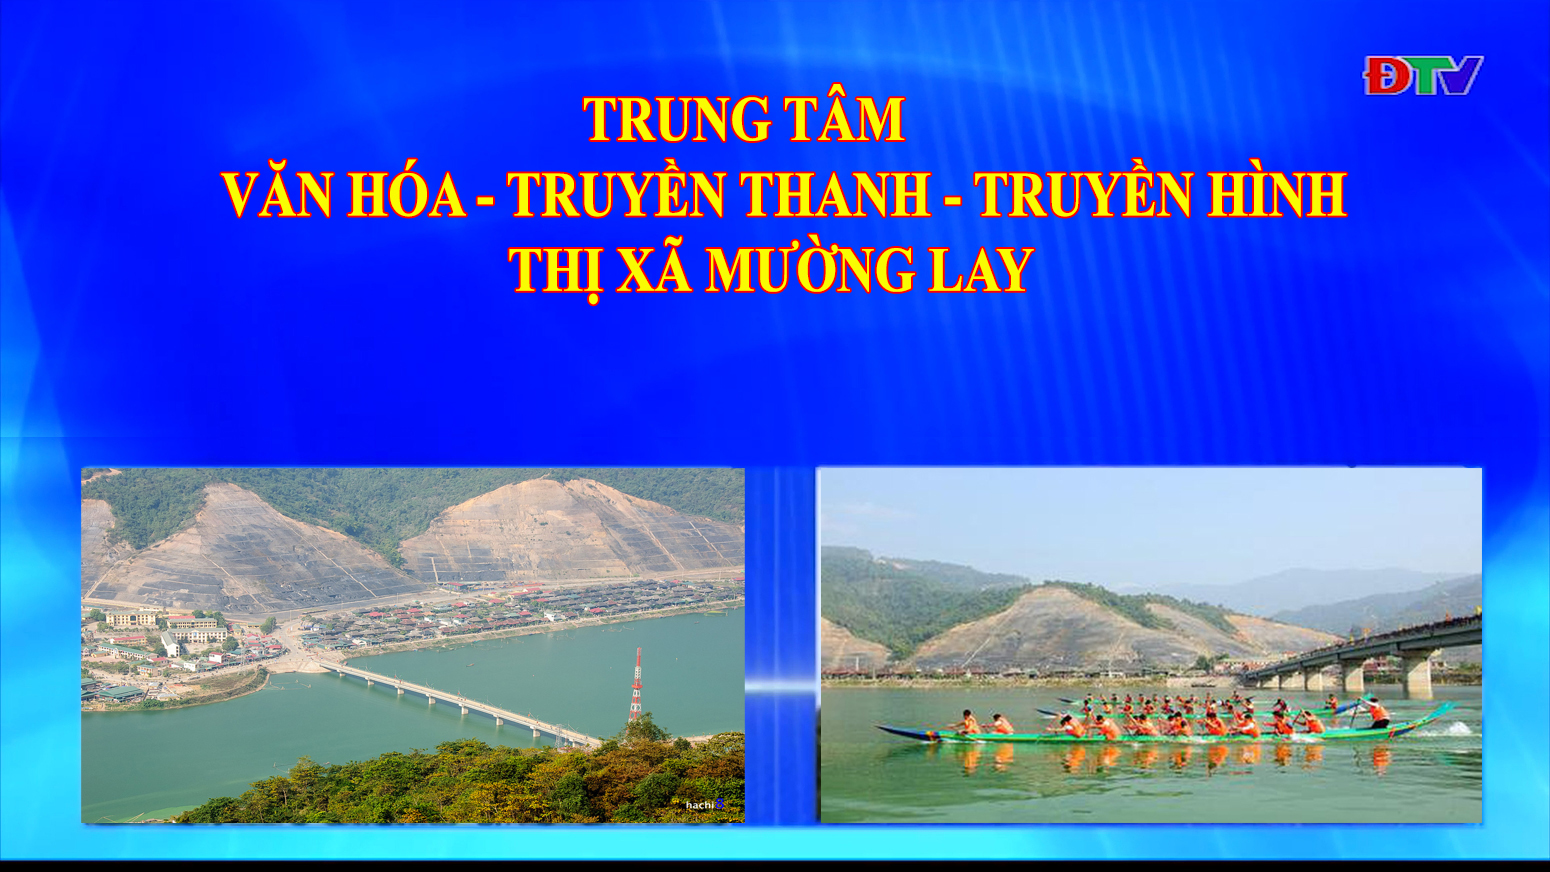 Trung tâm VH-TTTH thị xã Mường Lay (Ngày 21-1-2022)